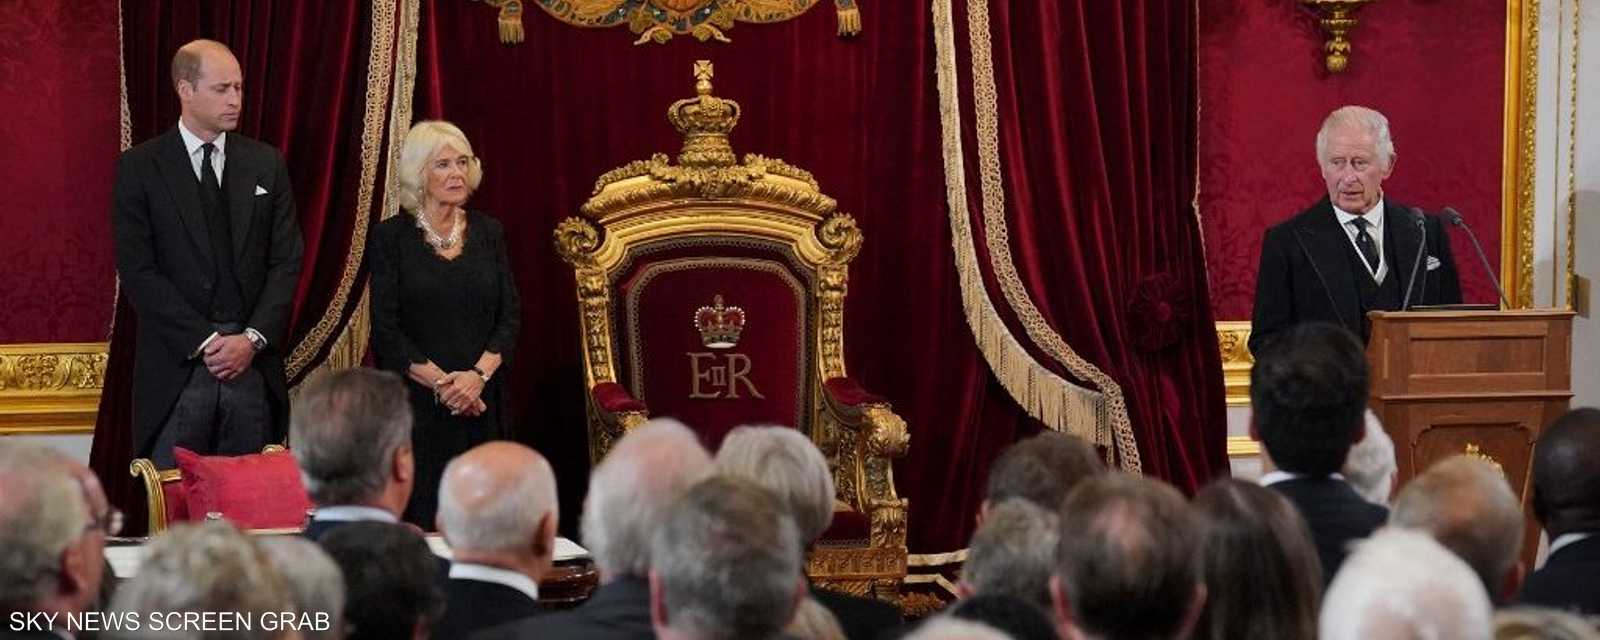 أعلن مجلس الخلافة تشارلز ملكا جديدا لبريطانيا